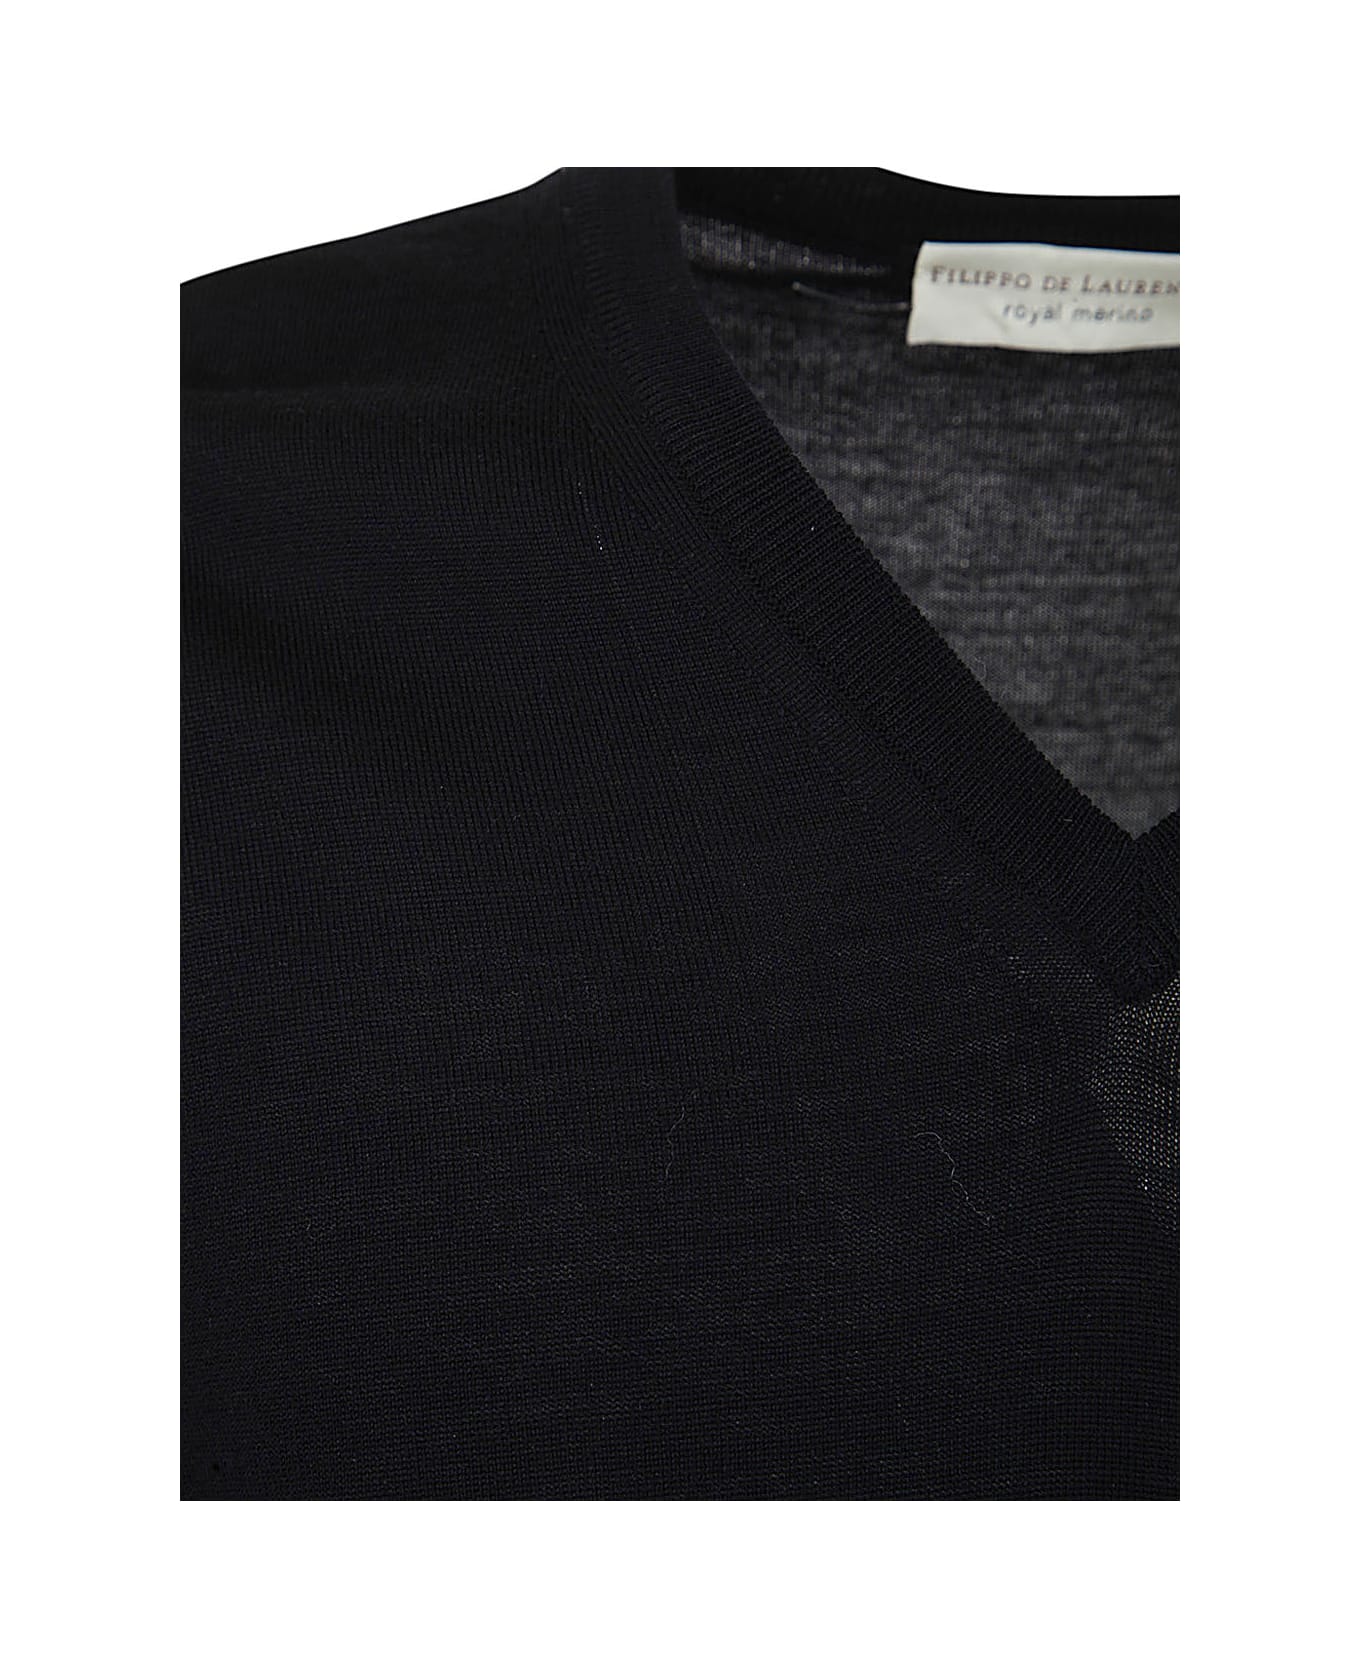 Filippo De Laurentiis Royal Merino Long Sleeves V Neck Sweater - Steel